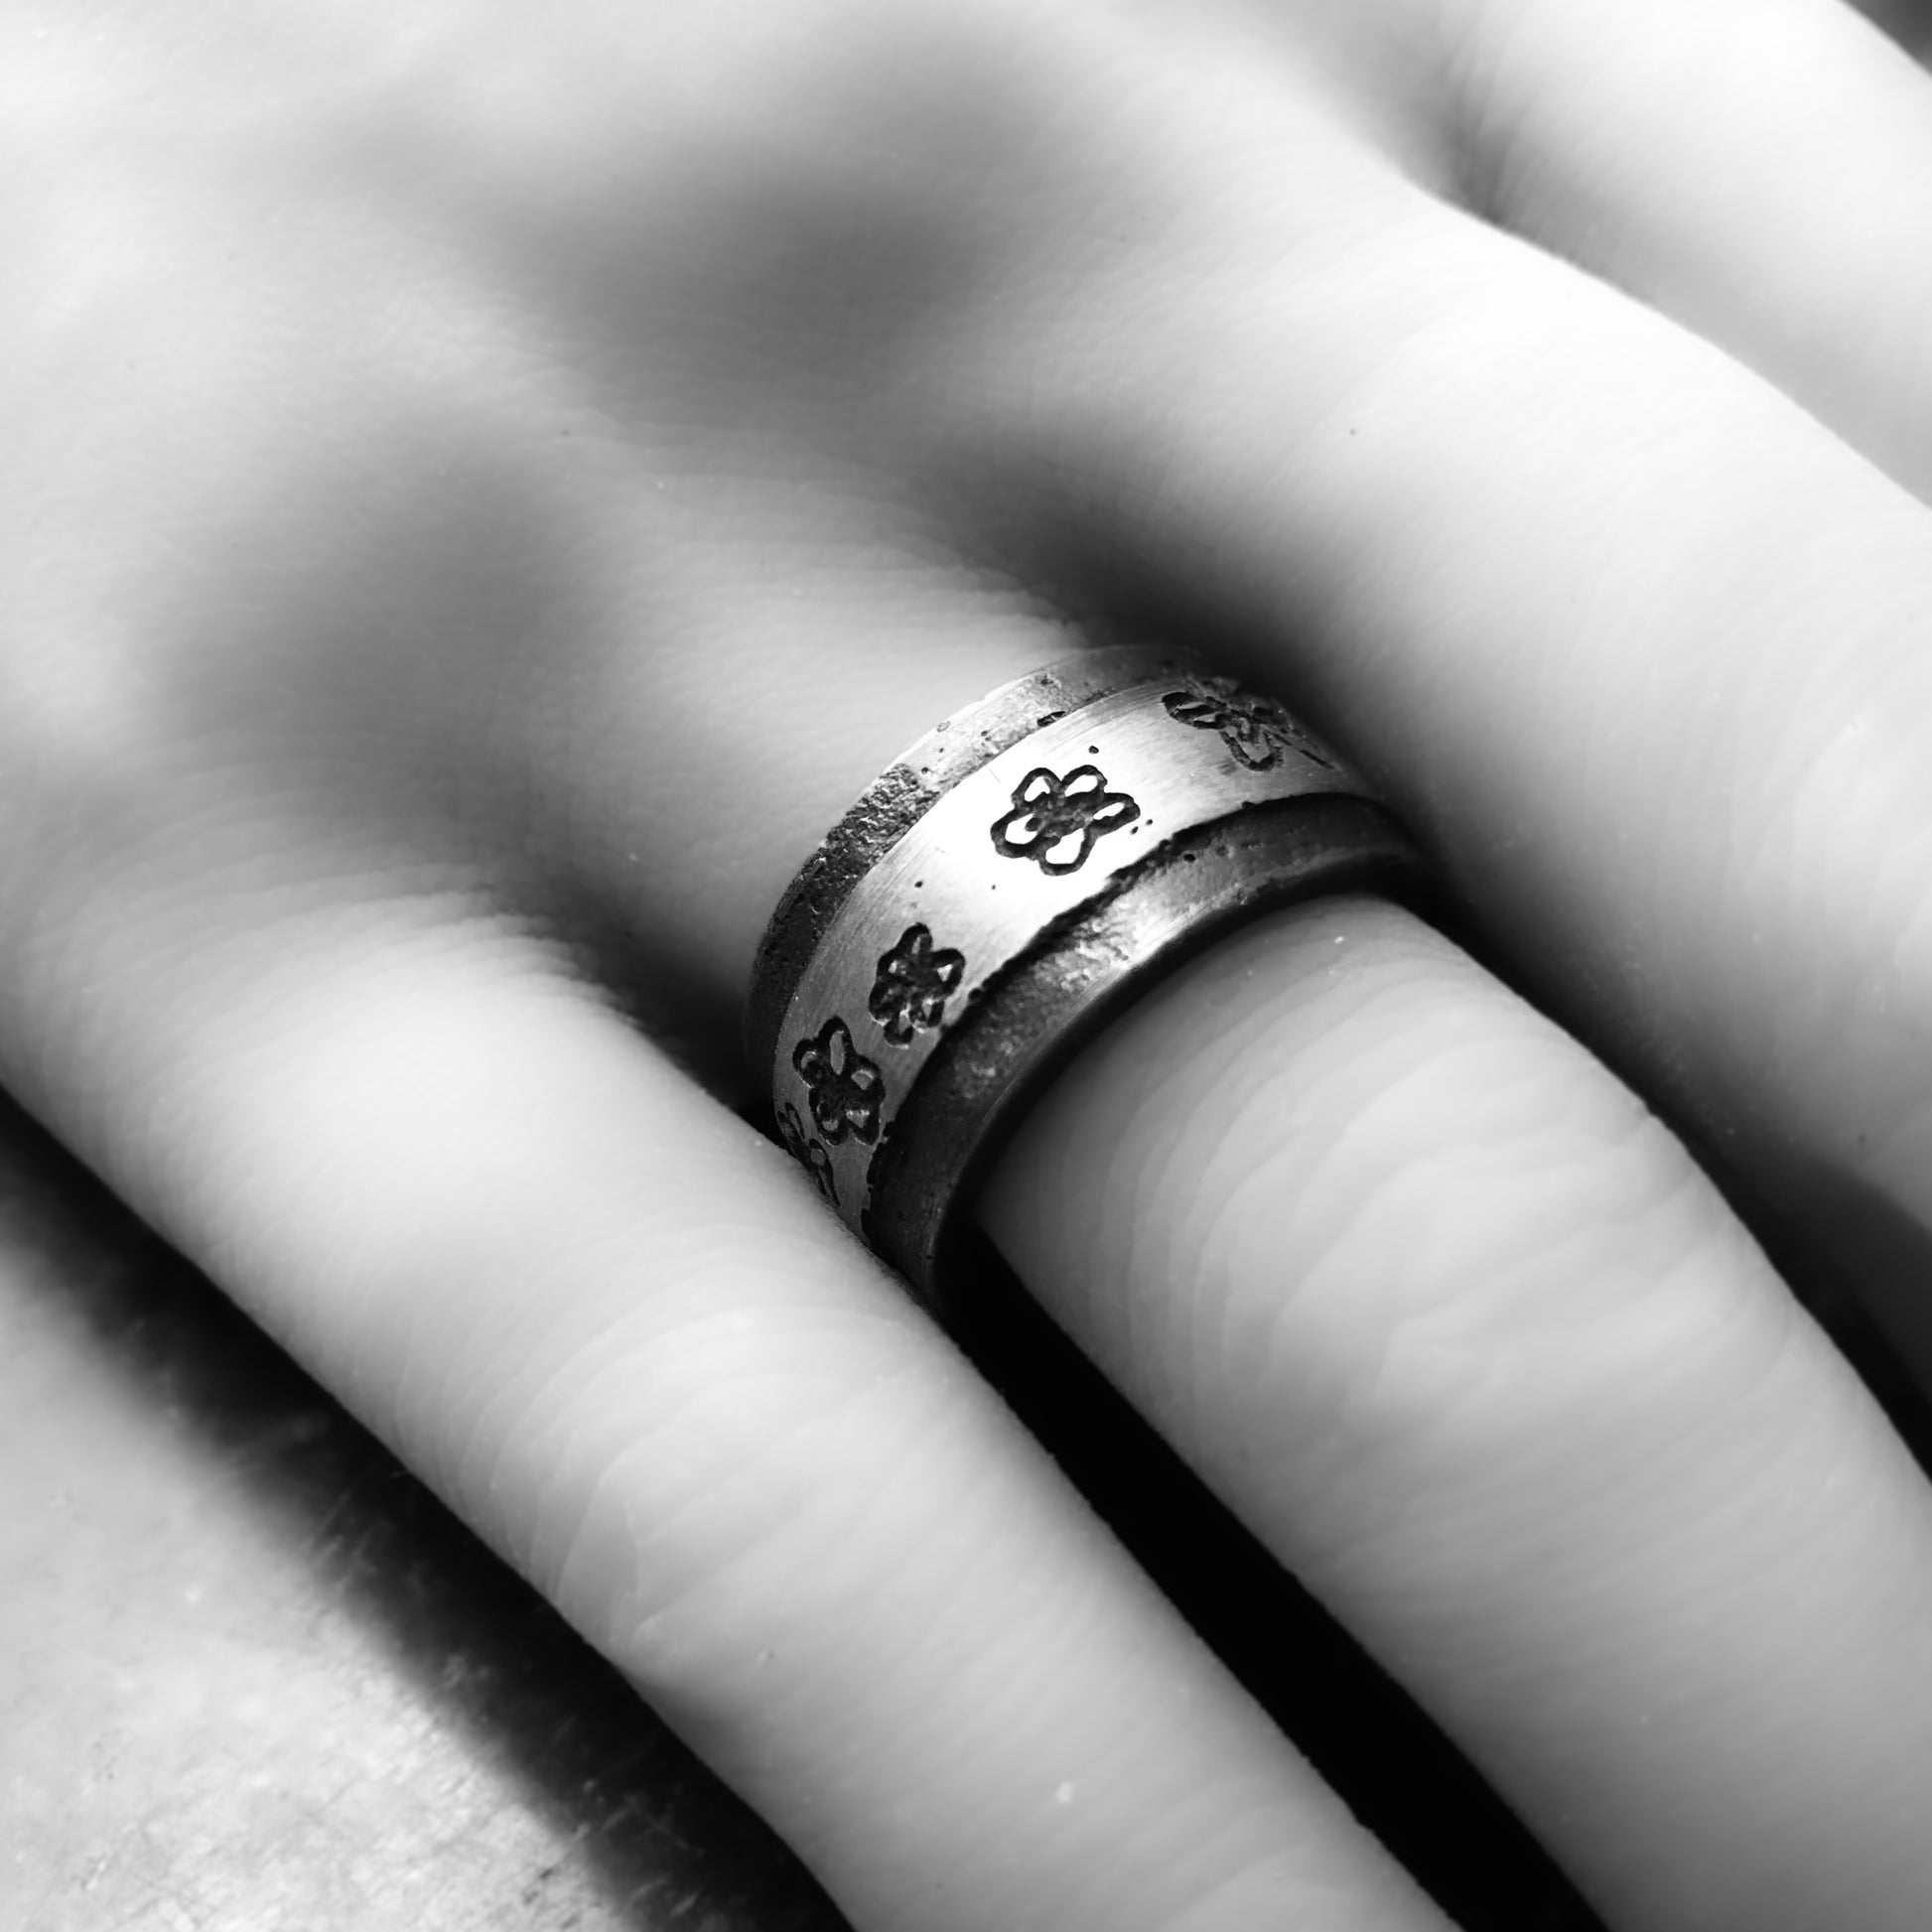 Silberring mit Blümchen an einer Hand fotografiert.